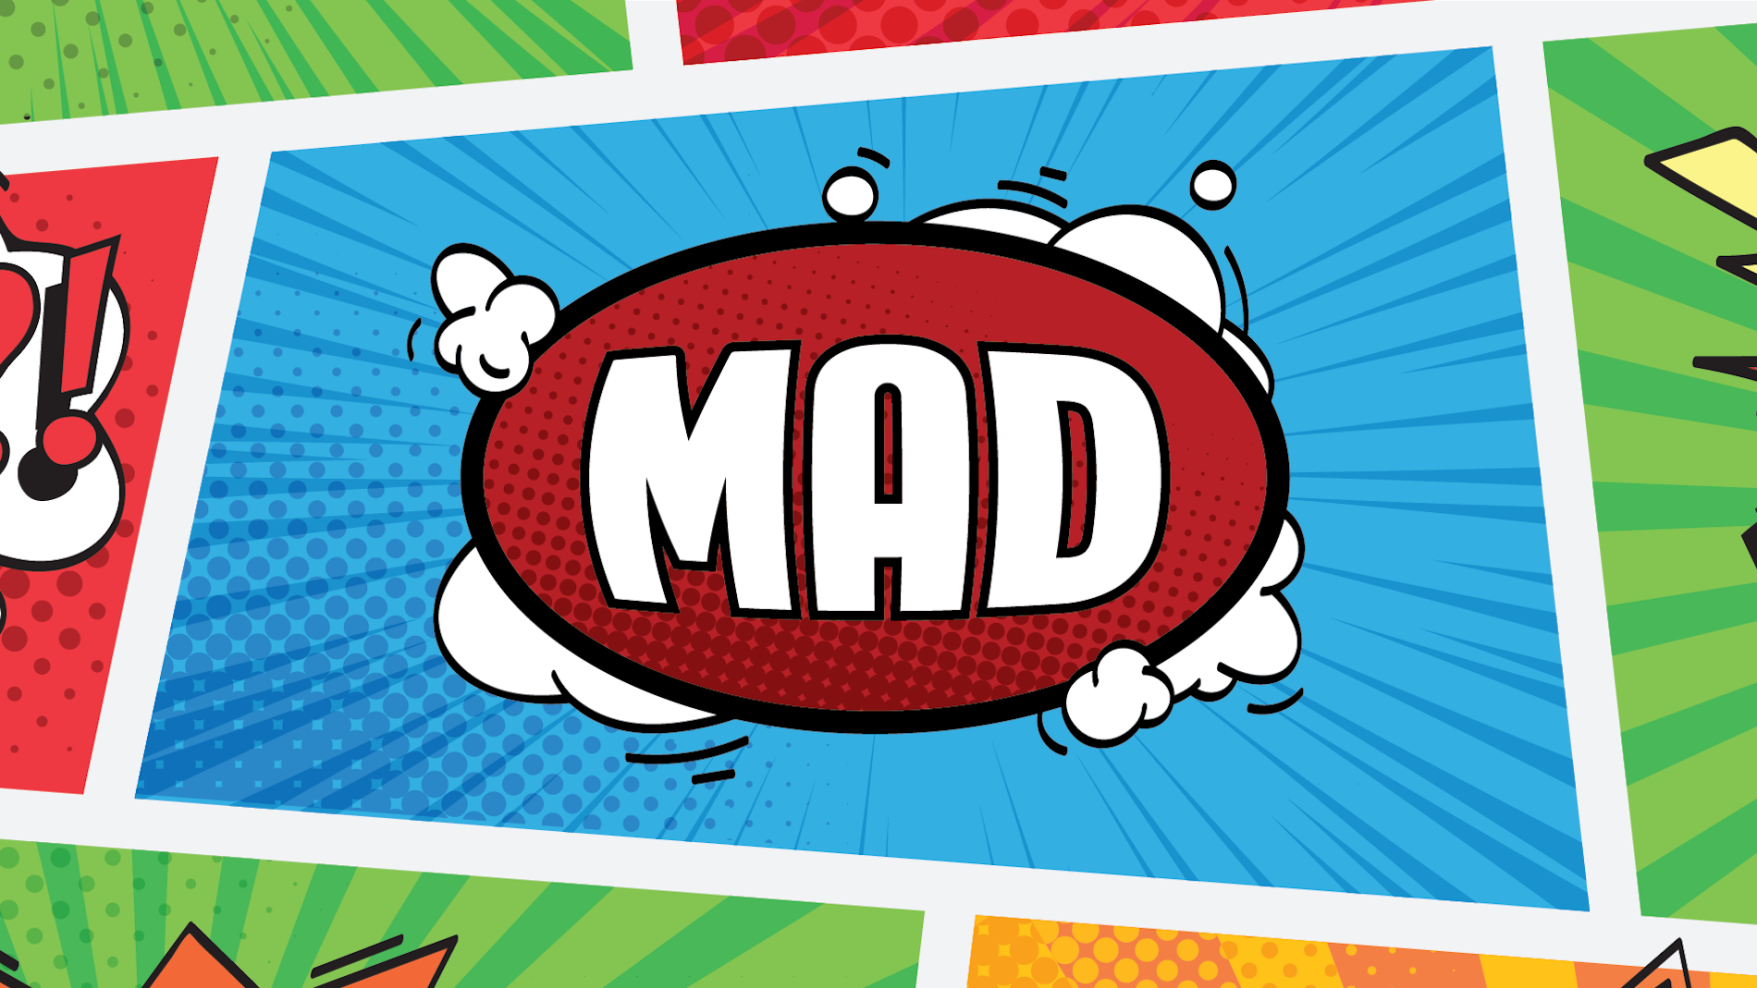  mad-image-6